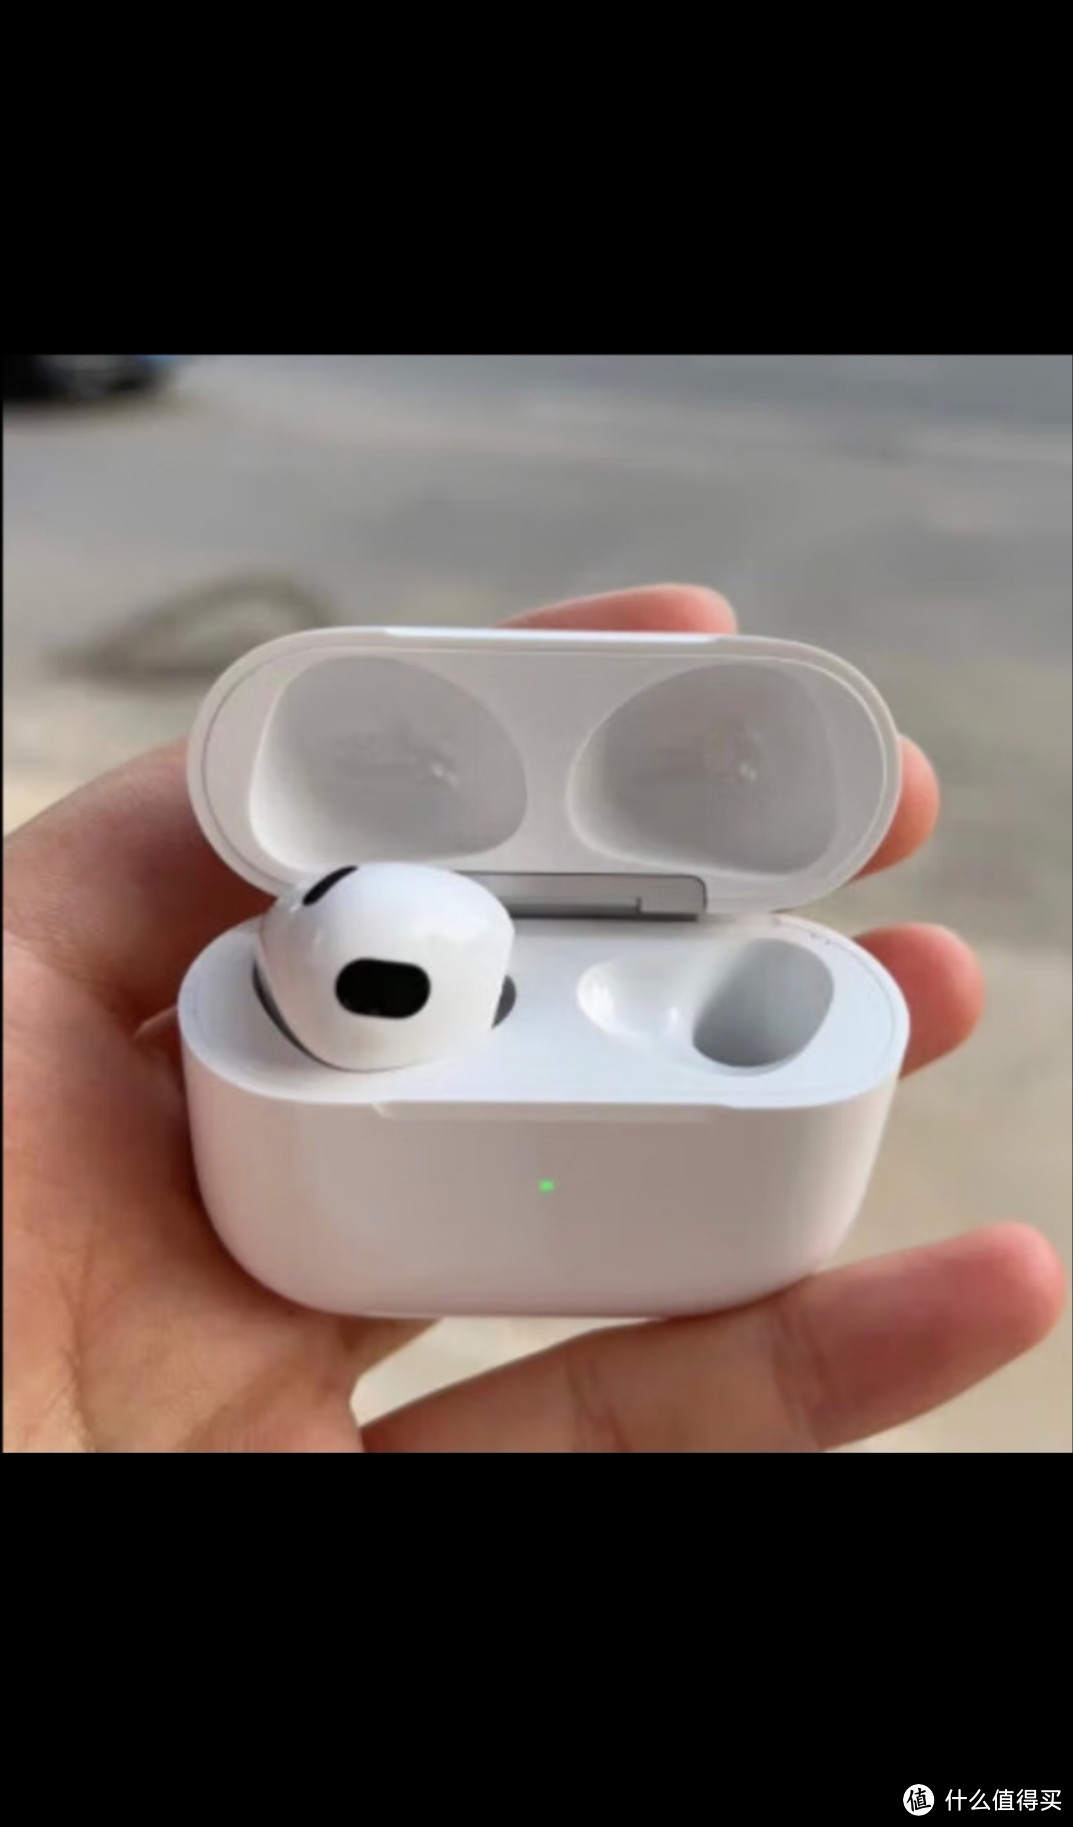 apple airpods (第三代) 配闪电充电盒 无线蓝牙耳机 apple耳机 适用